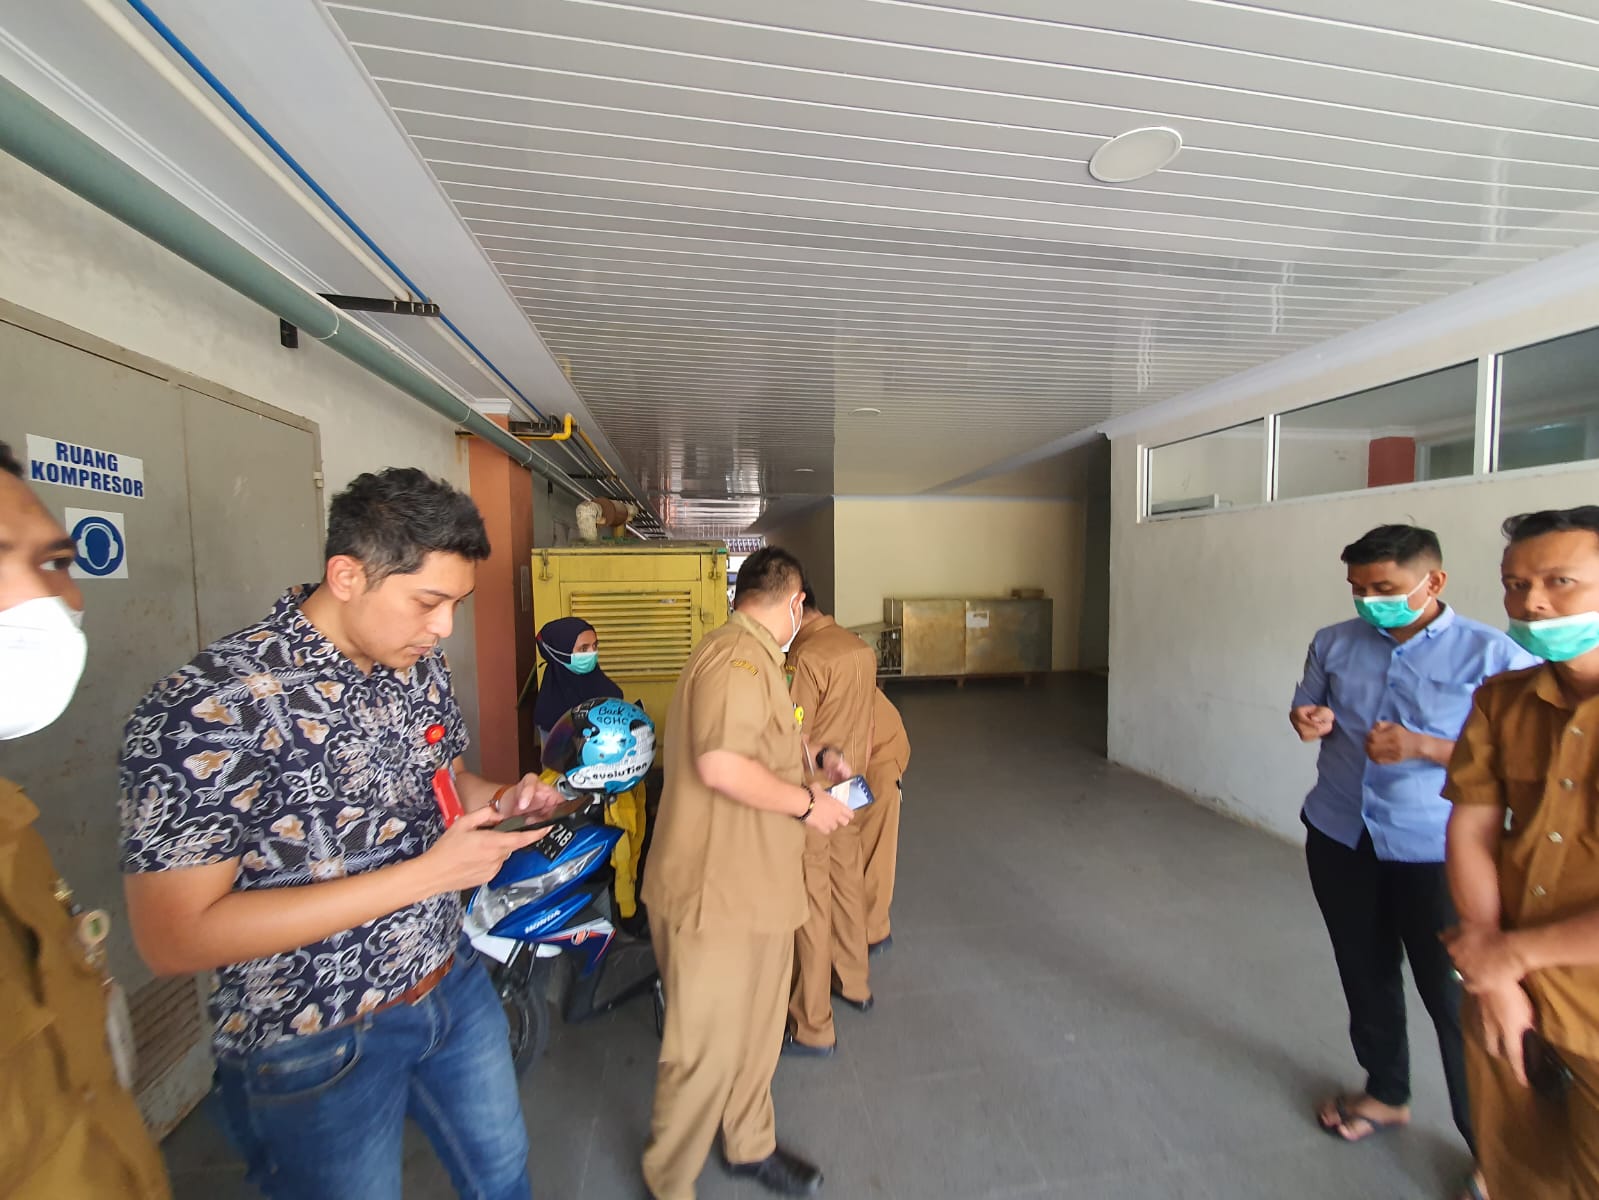 Bersama Tim Audit PKKN Penyidik Kejari Kampar Datangi RSUD Bangkinang, Terkait CT Scan